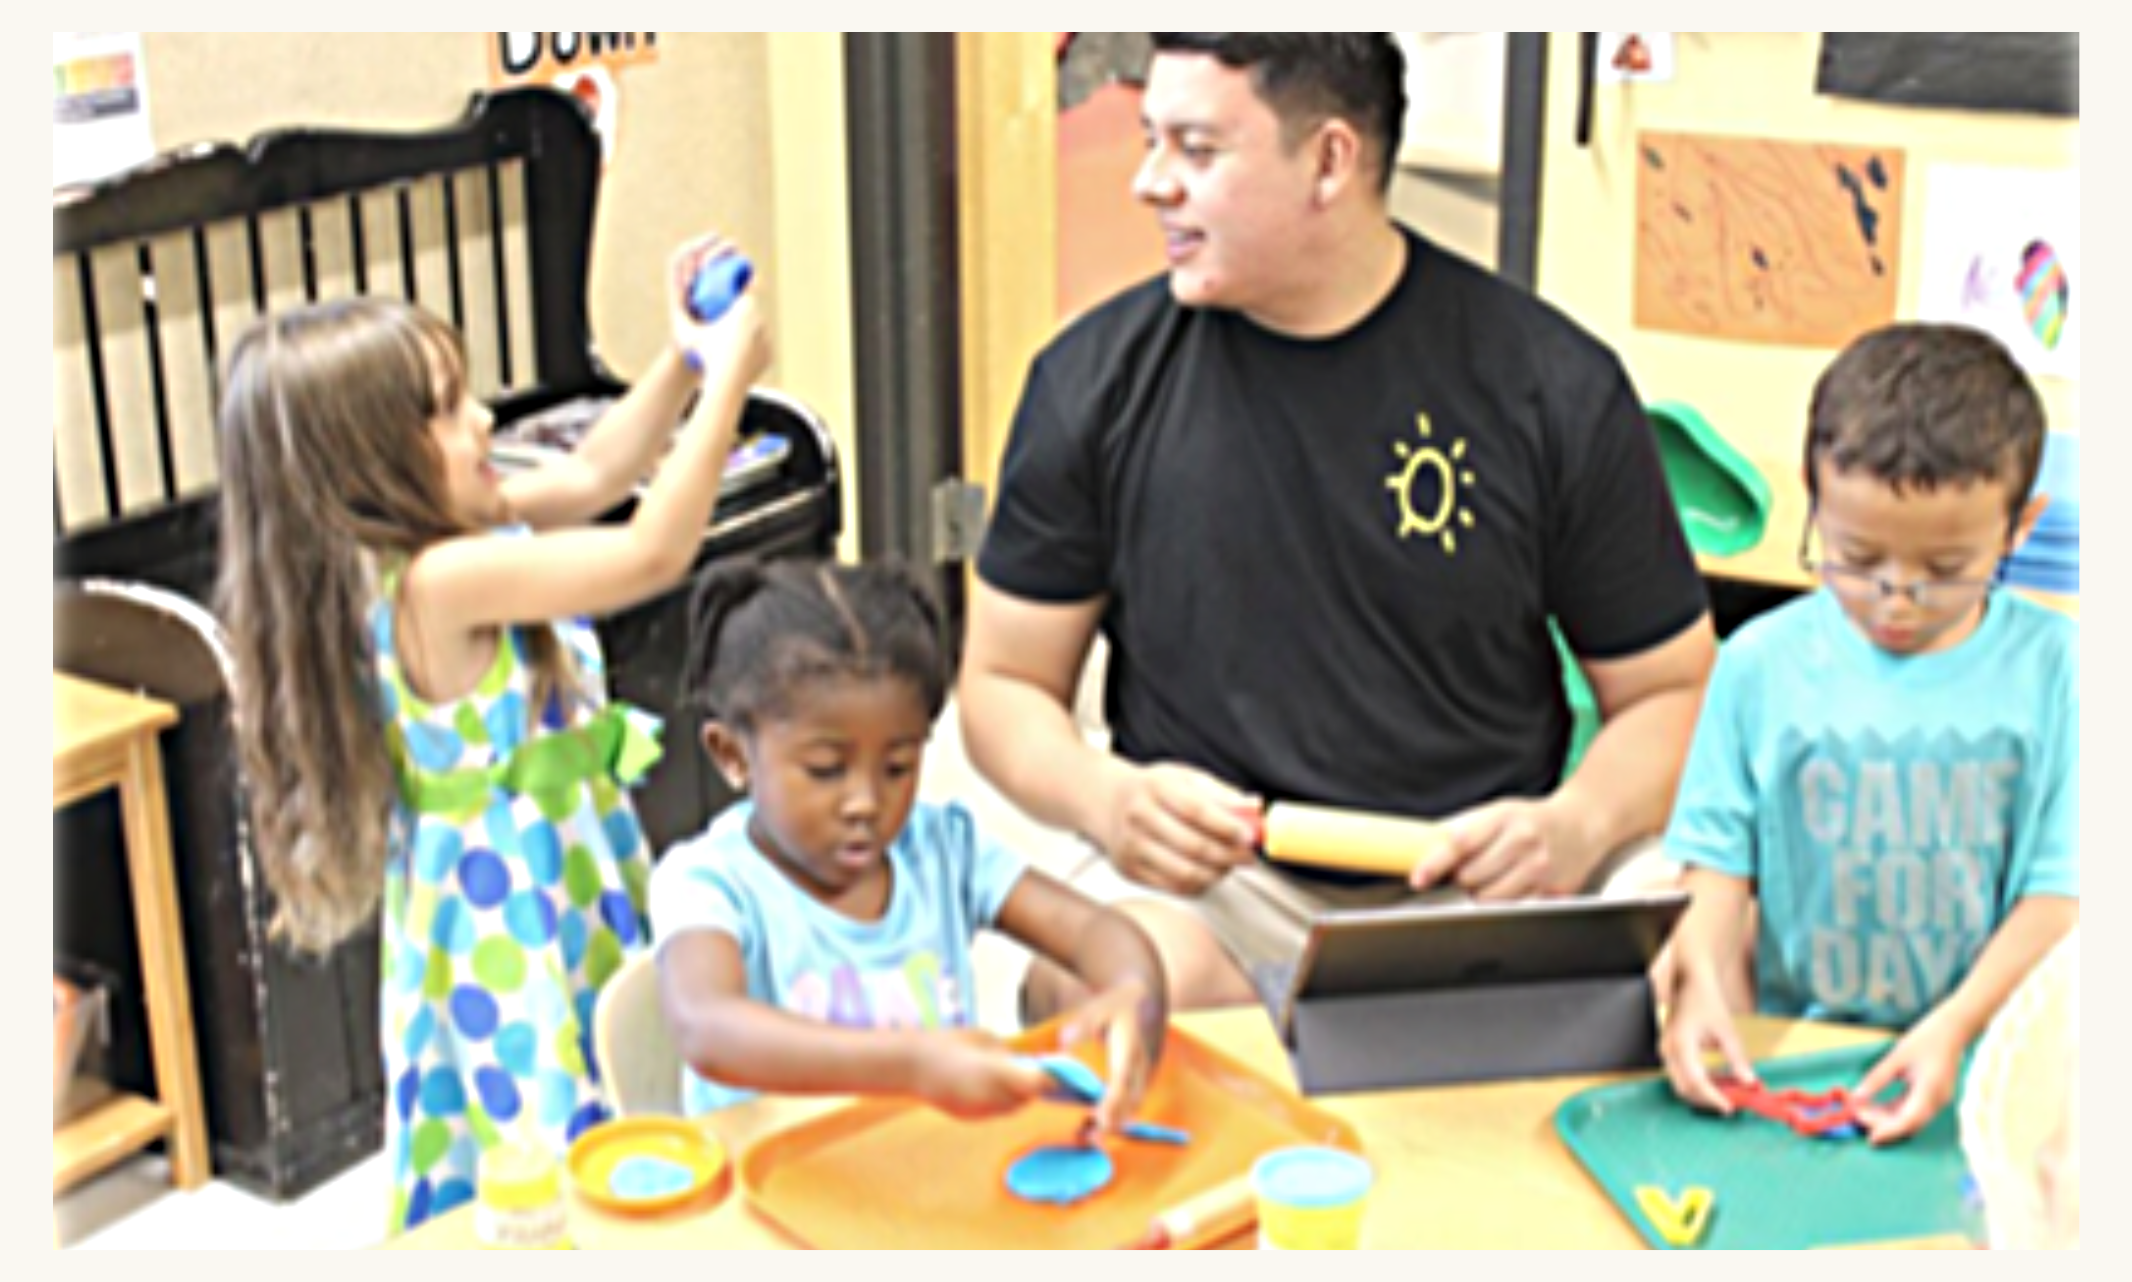 Roberto Diaz working with children on classroom activities